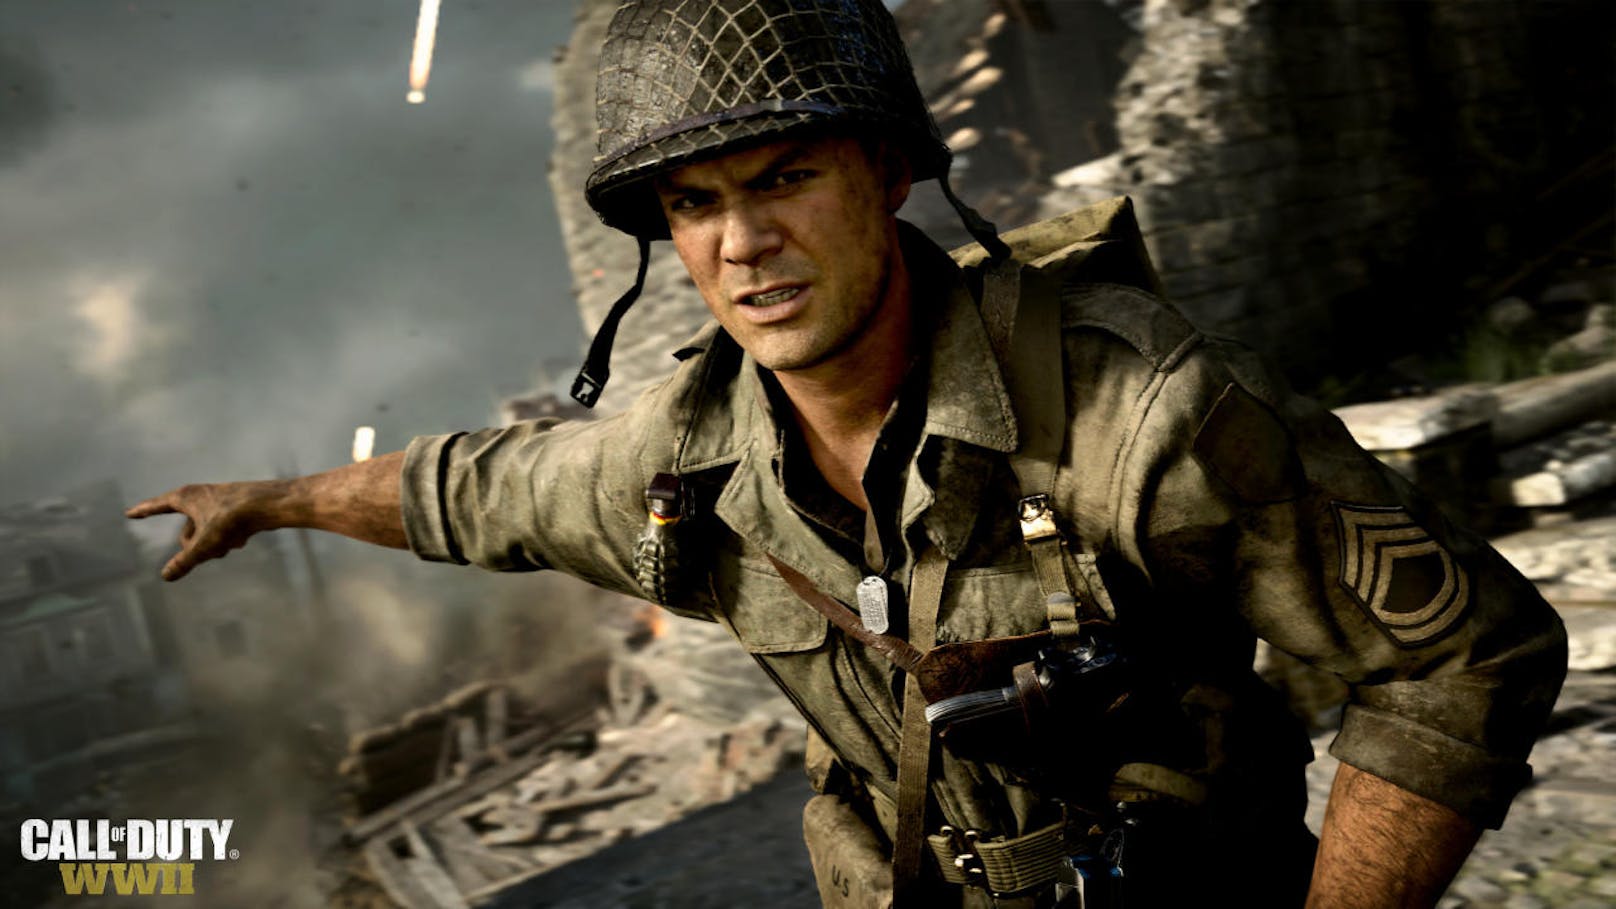 <b>November 2017:</b> Activision kehrt mit <b>Call of Duty: WWII</b> nicht nur zu den Wurzeln des Weltkriegs zurück, sondern auch der Heldenlegende den Rücken. Call of Duty: WWII setzt sich zurecht an die Spitze der CoD-Spiele und glänzt sowohl mit einer exzellenten Kampagne, als auch mit einem grandiosen Multiplayer mit dem "Krieg"-Modus als Sahnehäubchen. <a href="https://www.heute.at/digital/games/story/Call-of-Duty--WWII-im-Test---bildgewaltiger-Weltkrieg-47249089">Hier lesen Sie unser Game Review.</a>